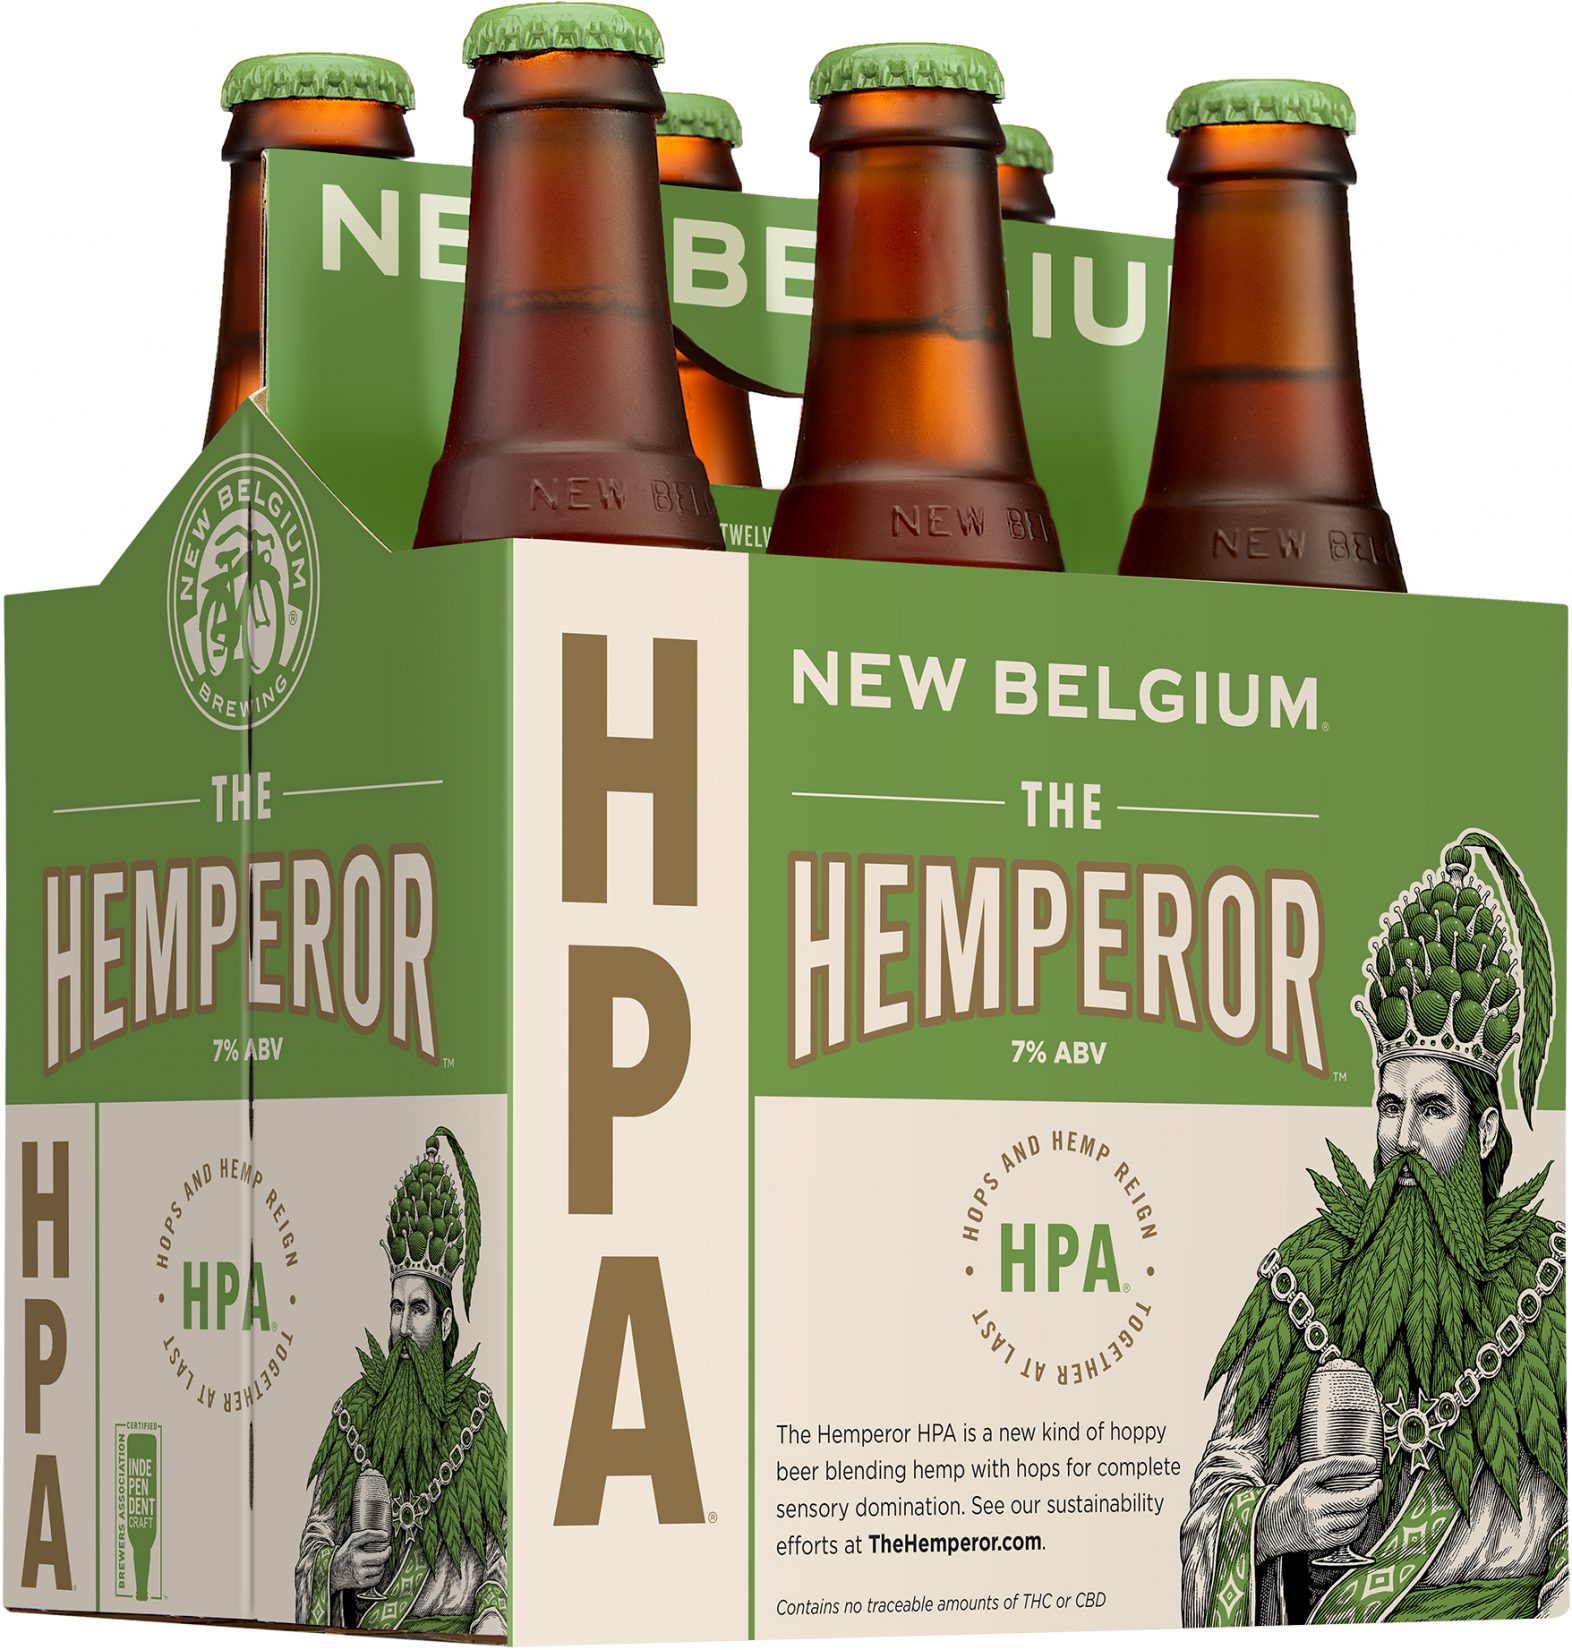 New Belgium The Hemperor HPA hemp beer